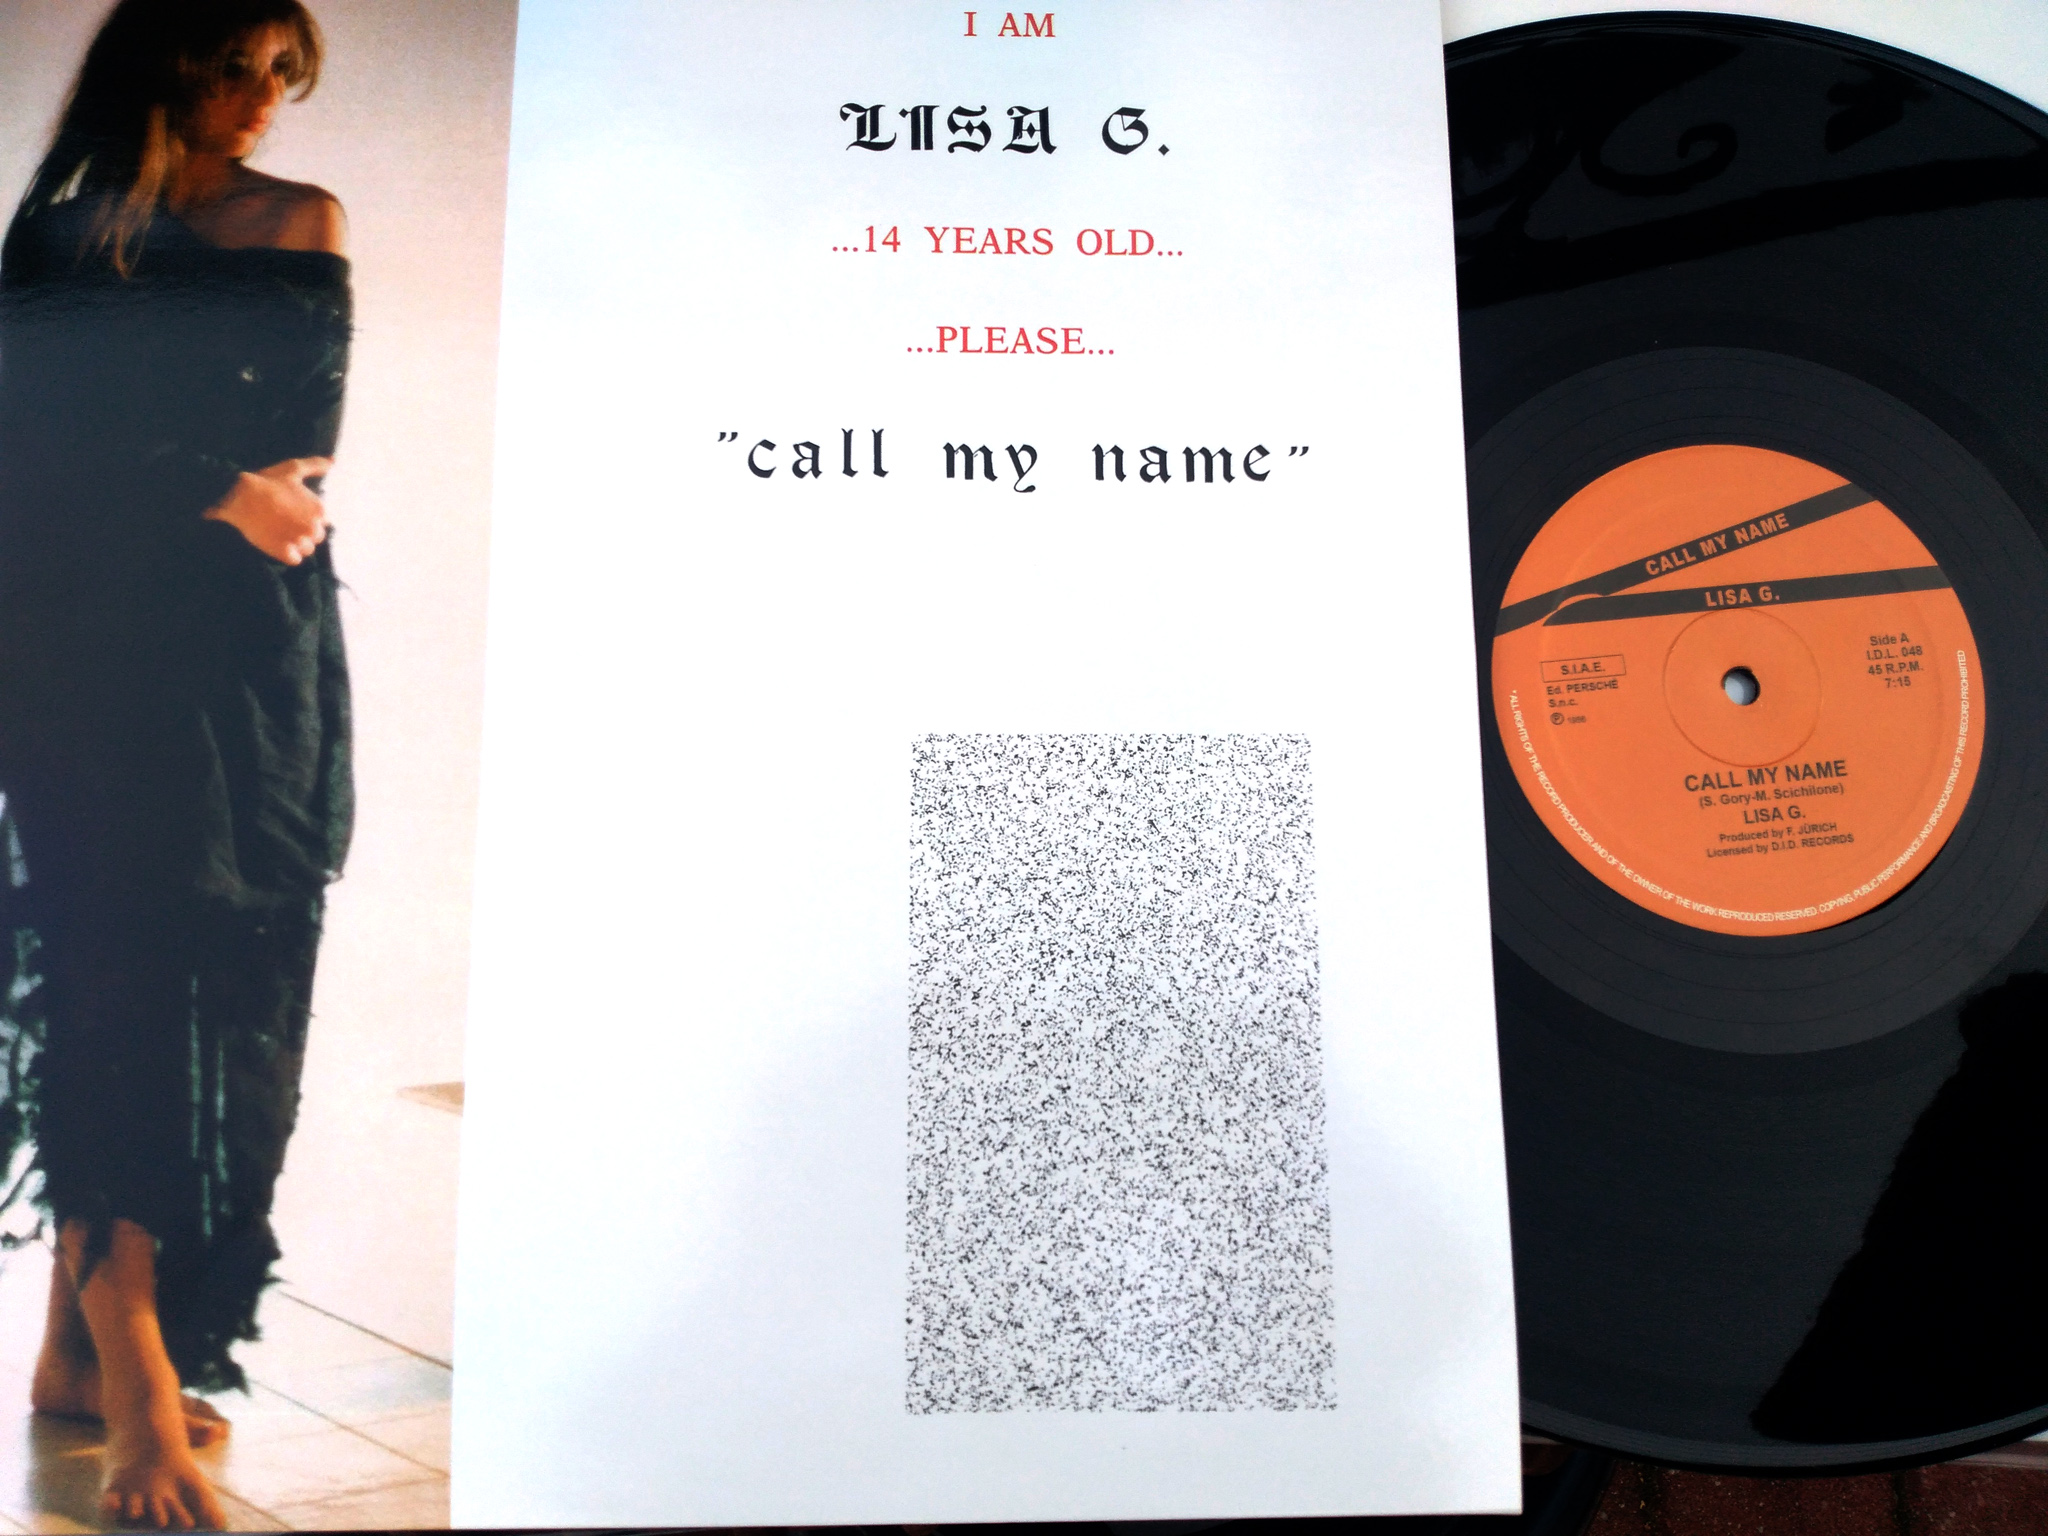 Lisa G. - Call My Name